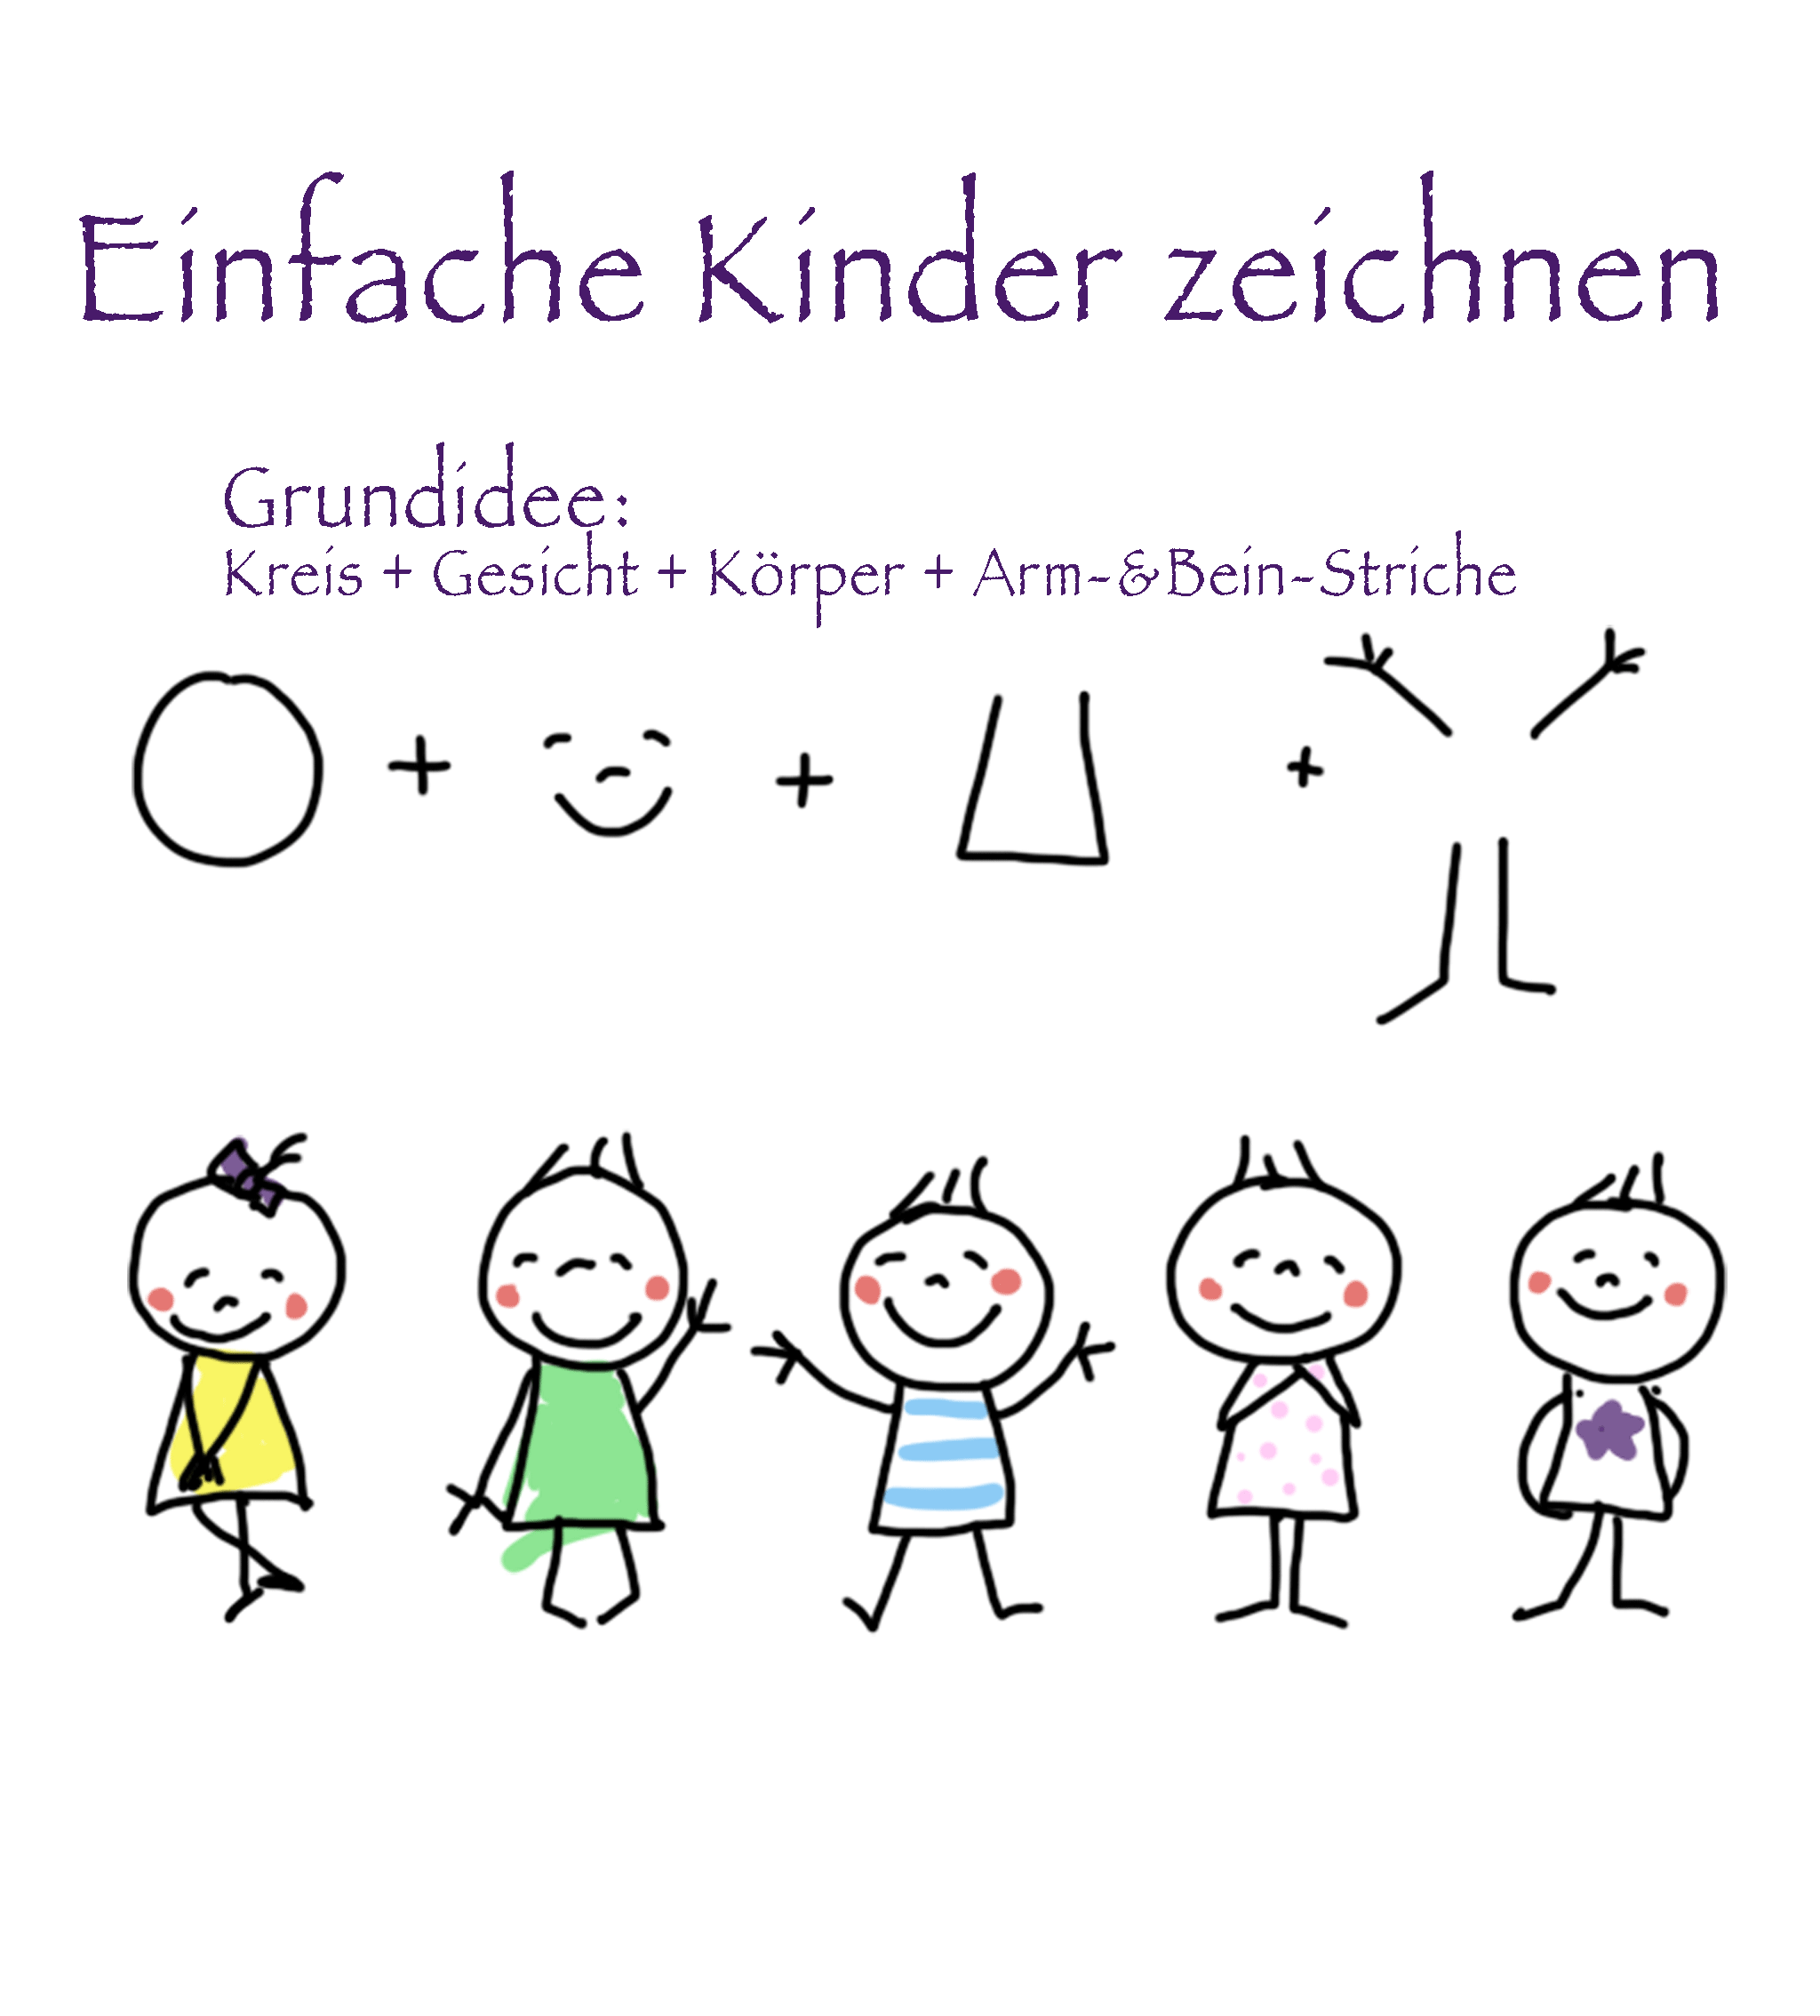 Einfache-Kinder-und-Menschen-zeichnen_Strichmännchen-5